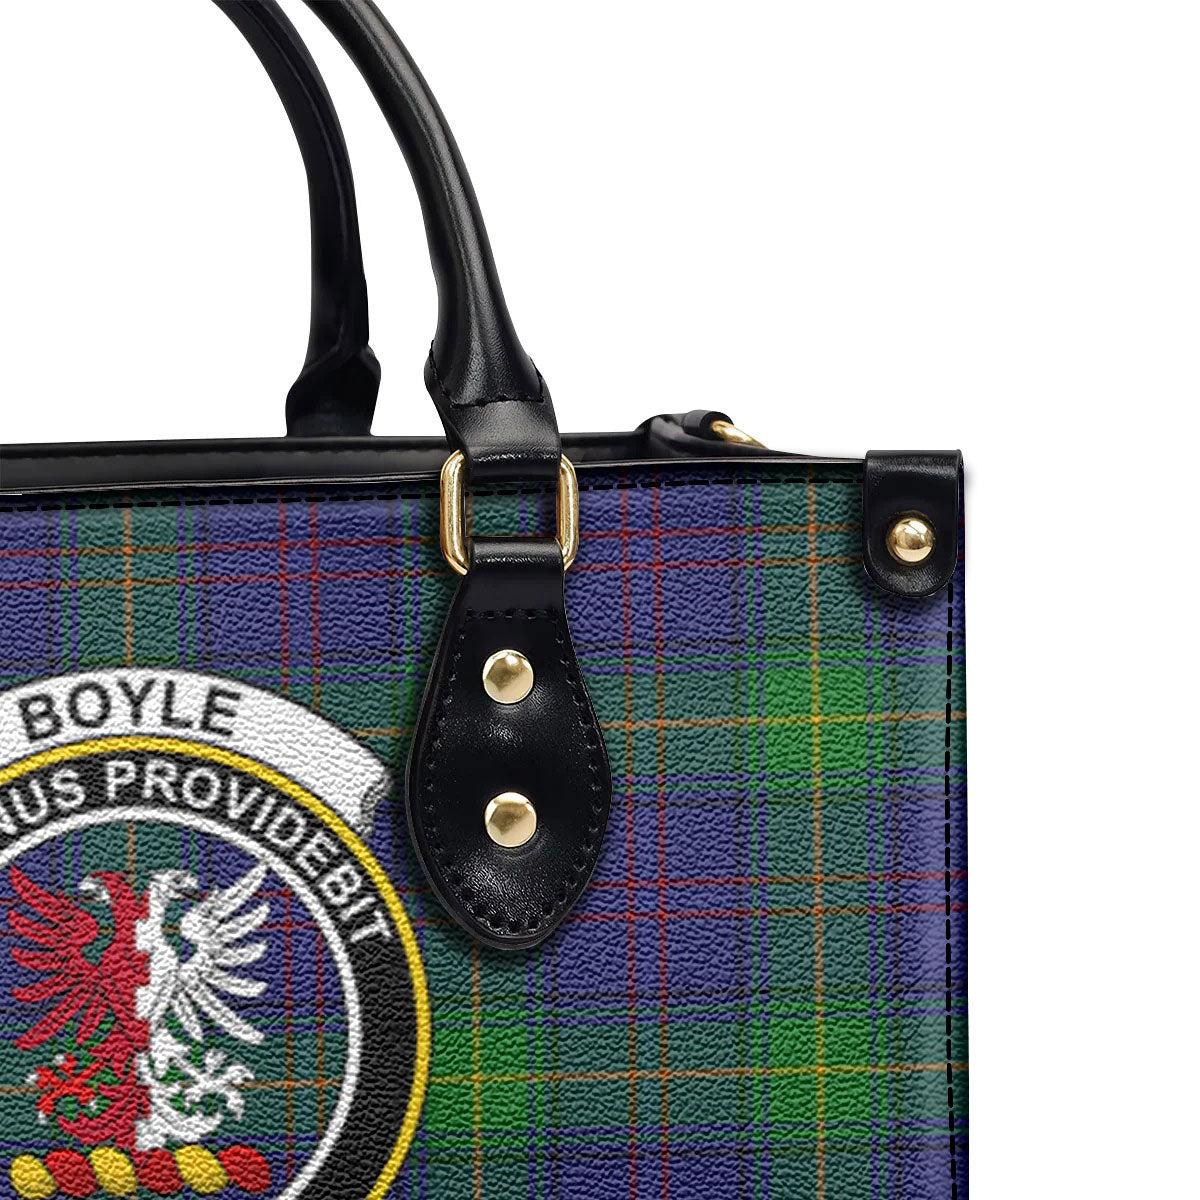 Boyle Tartan Crest Leather Handbag